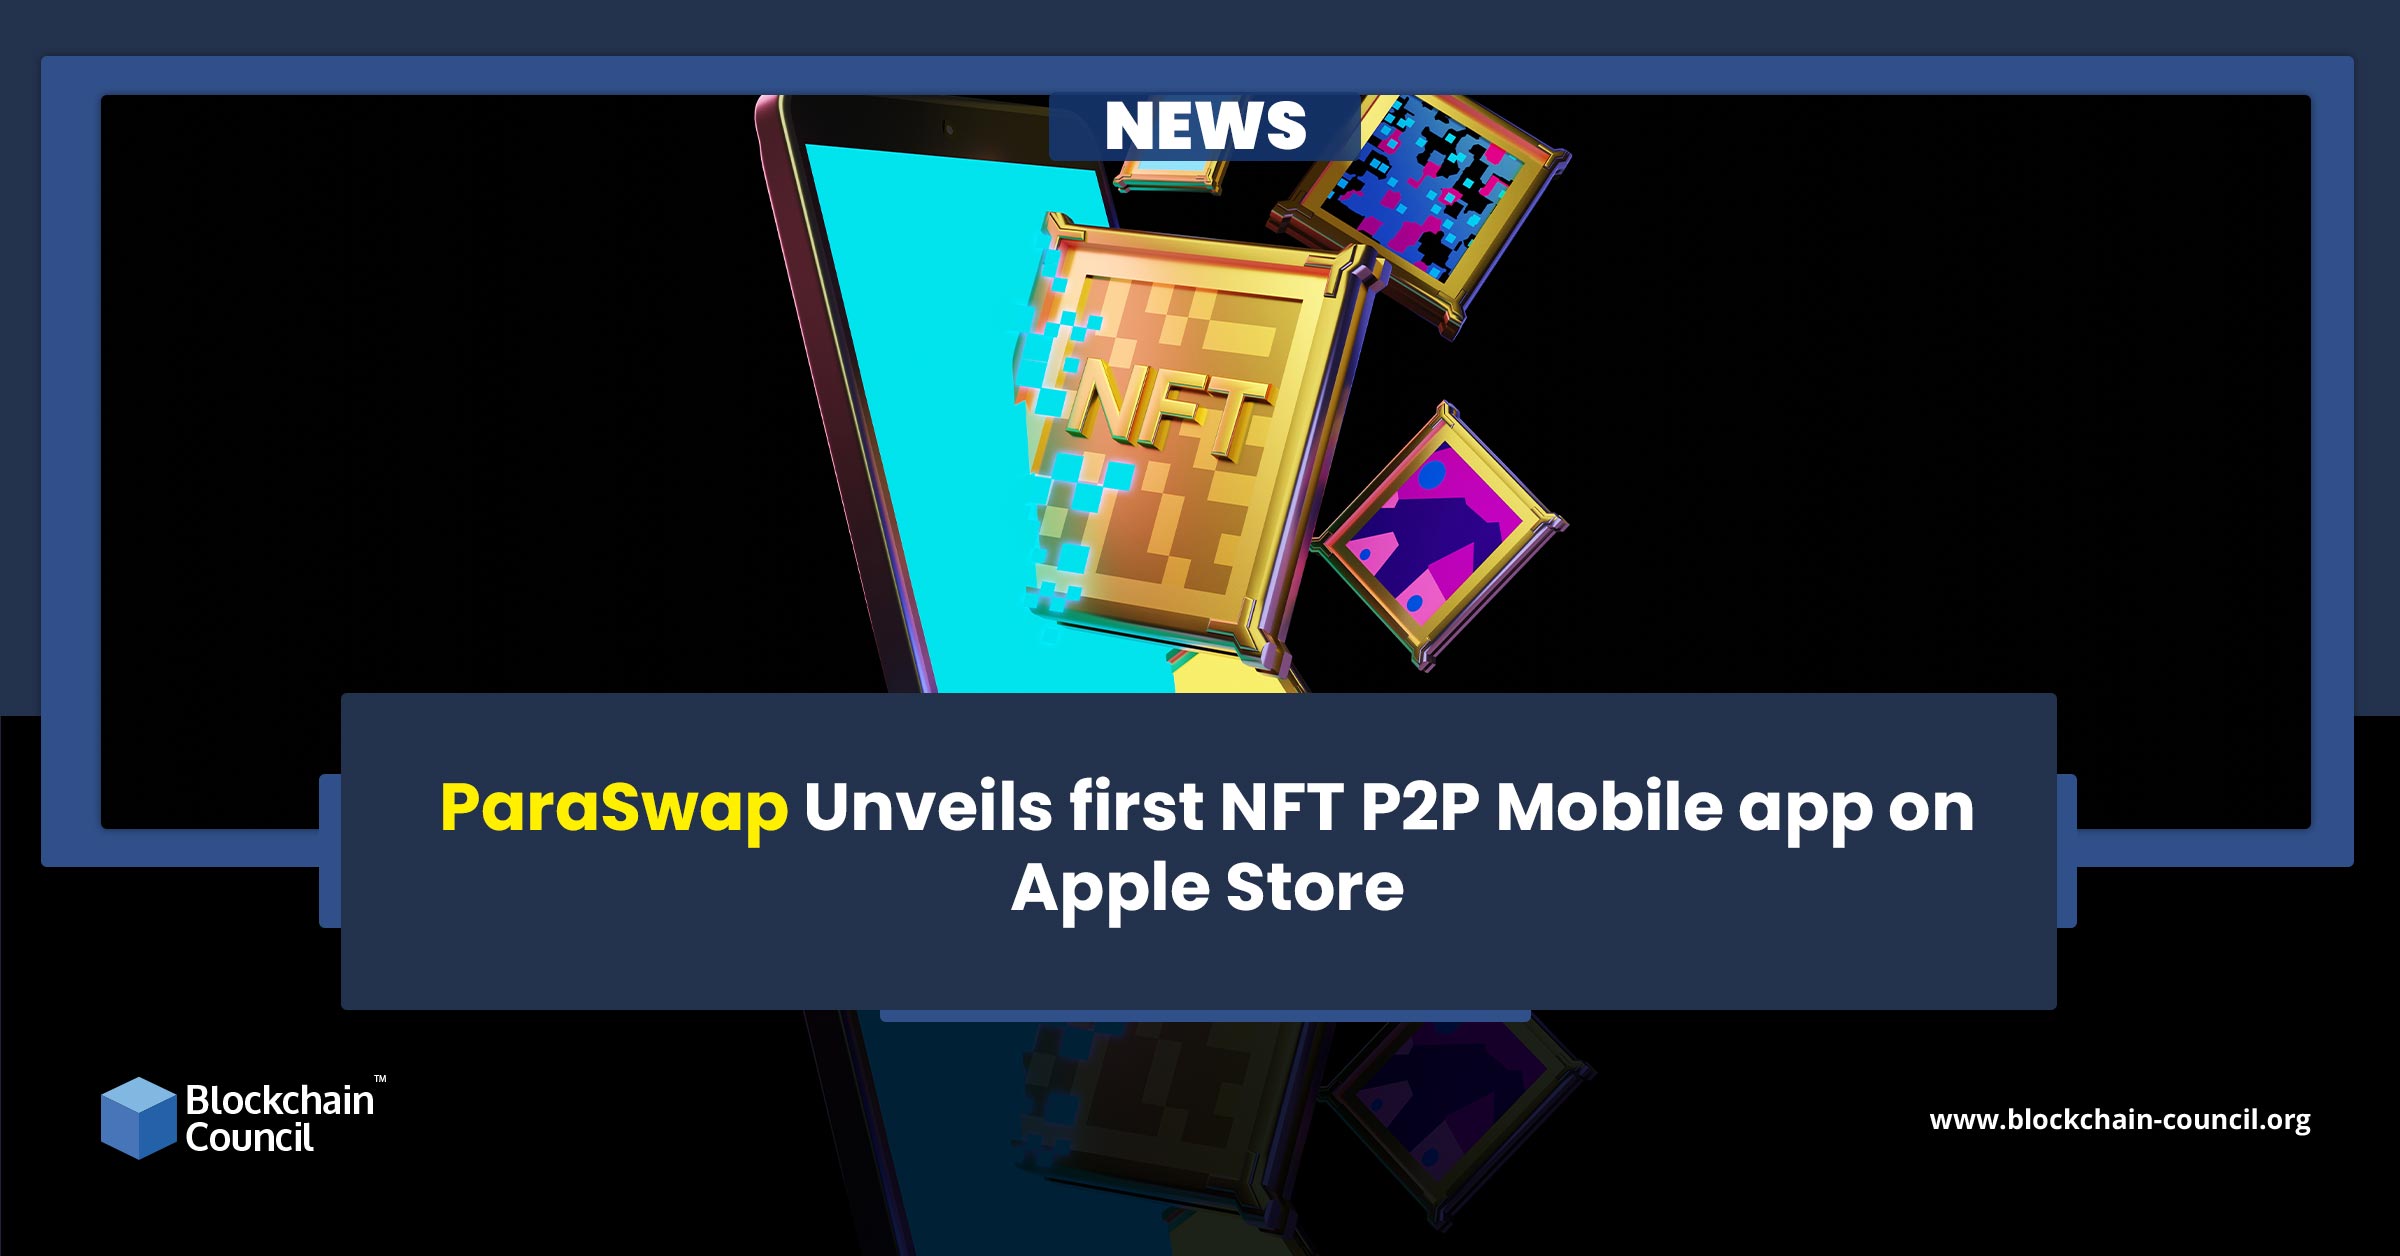 ParaSwap Unveils first NFT P2P Mobile app on Apple Store